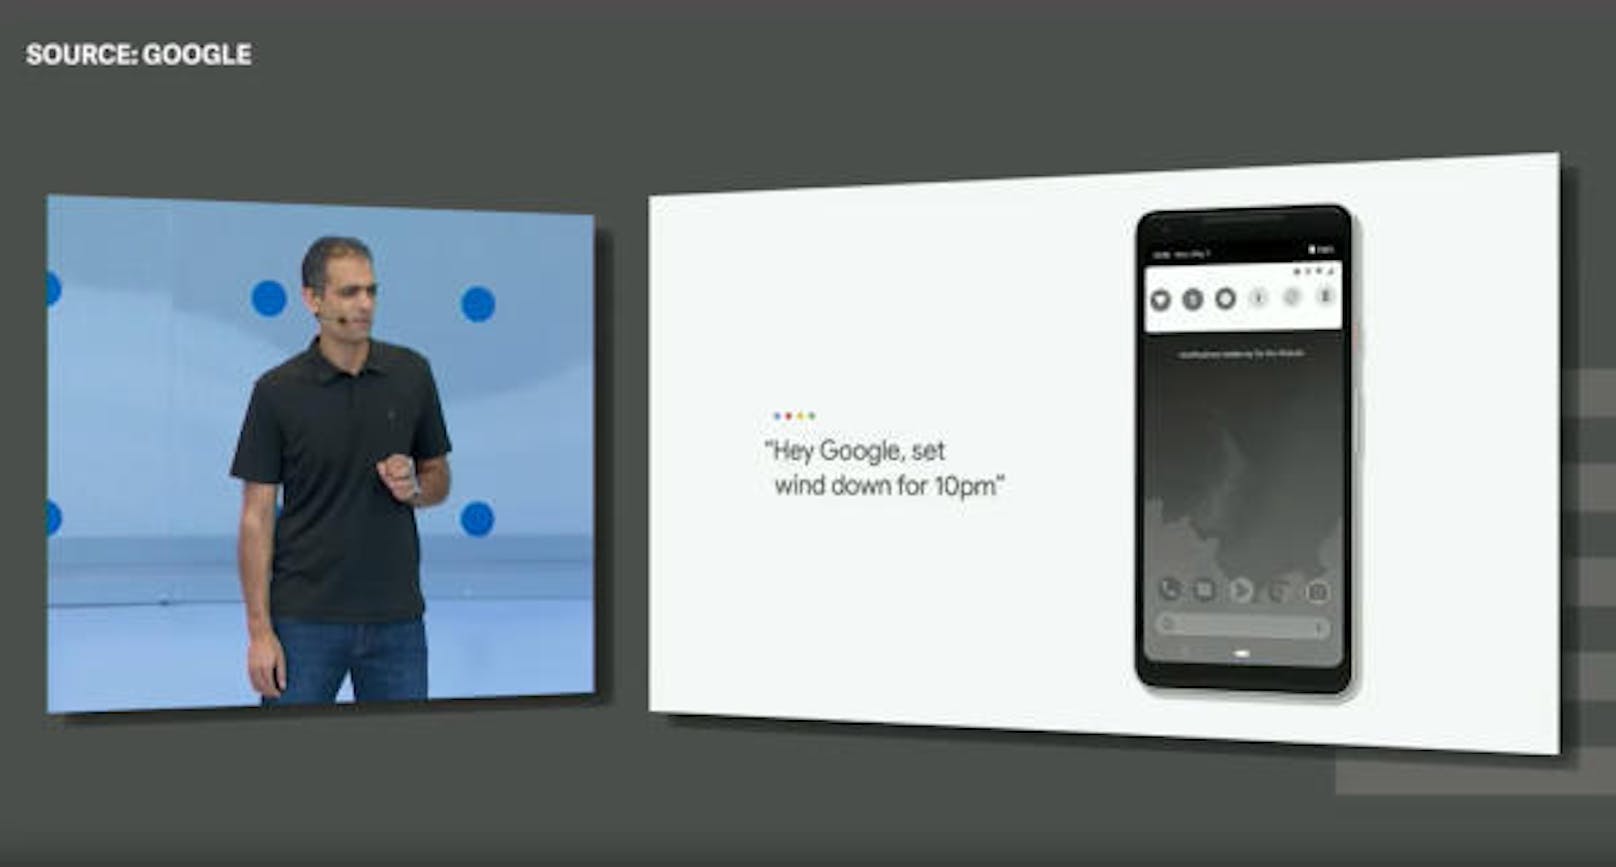 Schwarzweiß statt Farbe ist auch Thema bei Android selbst. Am Abend soll das Display nur noch monochrom sein, um Nutzern beim Abschalten zu helfen.